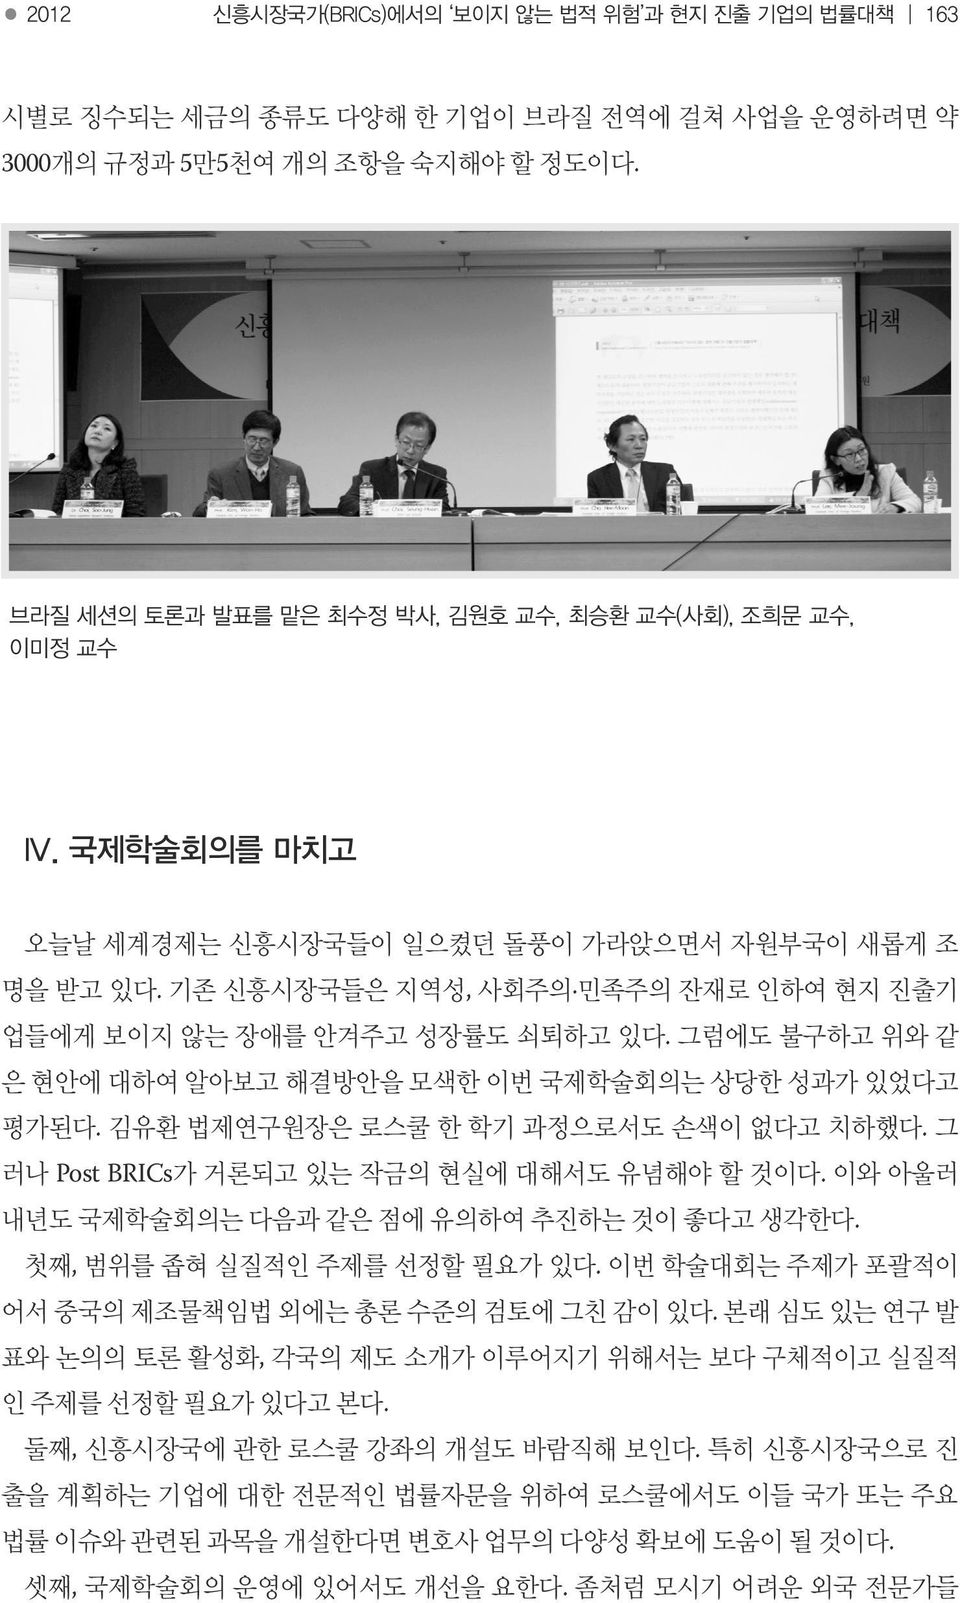 브라질 세션의 토론과 발표를 맡은 최수정 박사, 김원호 교수, 최승환